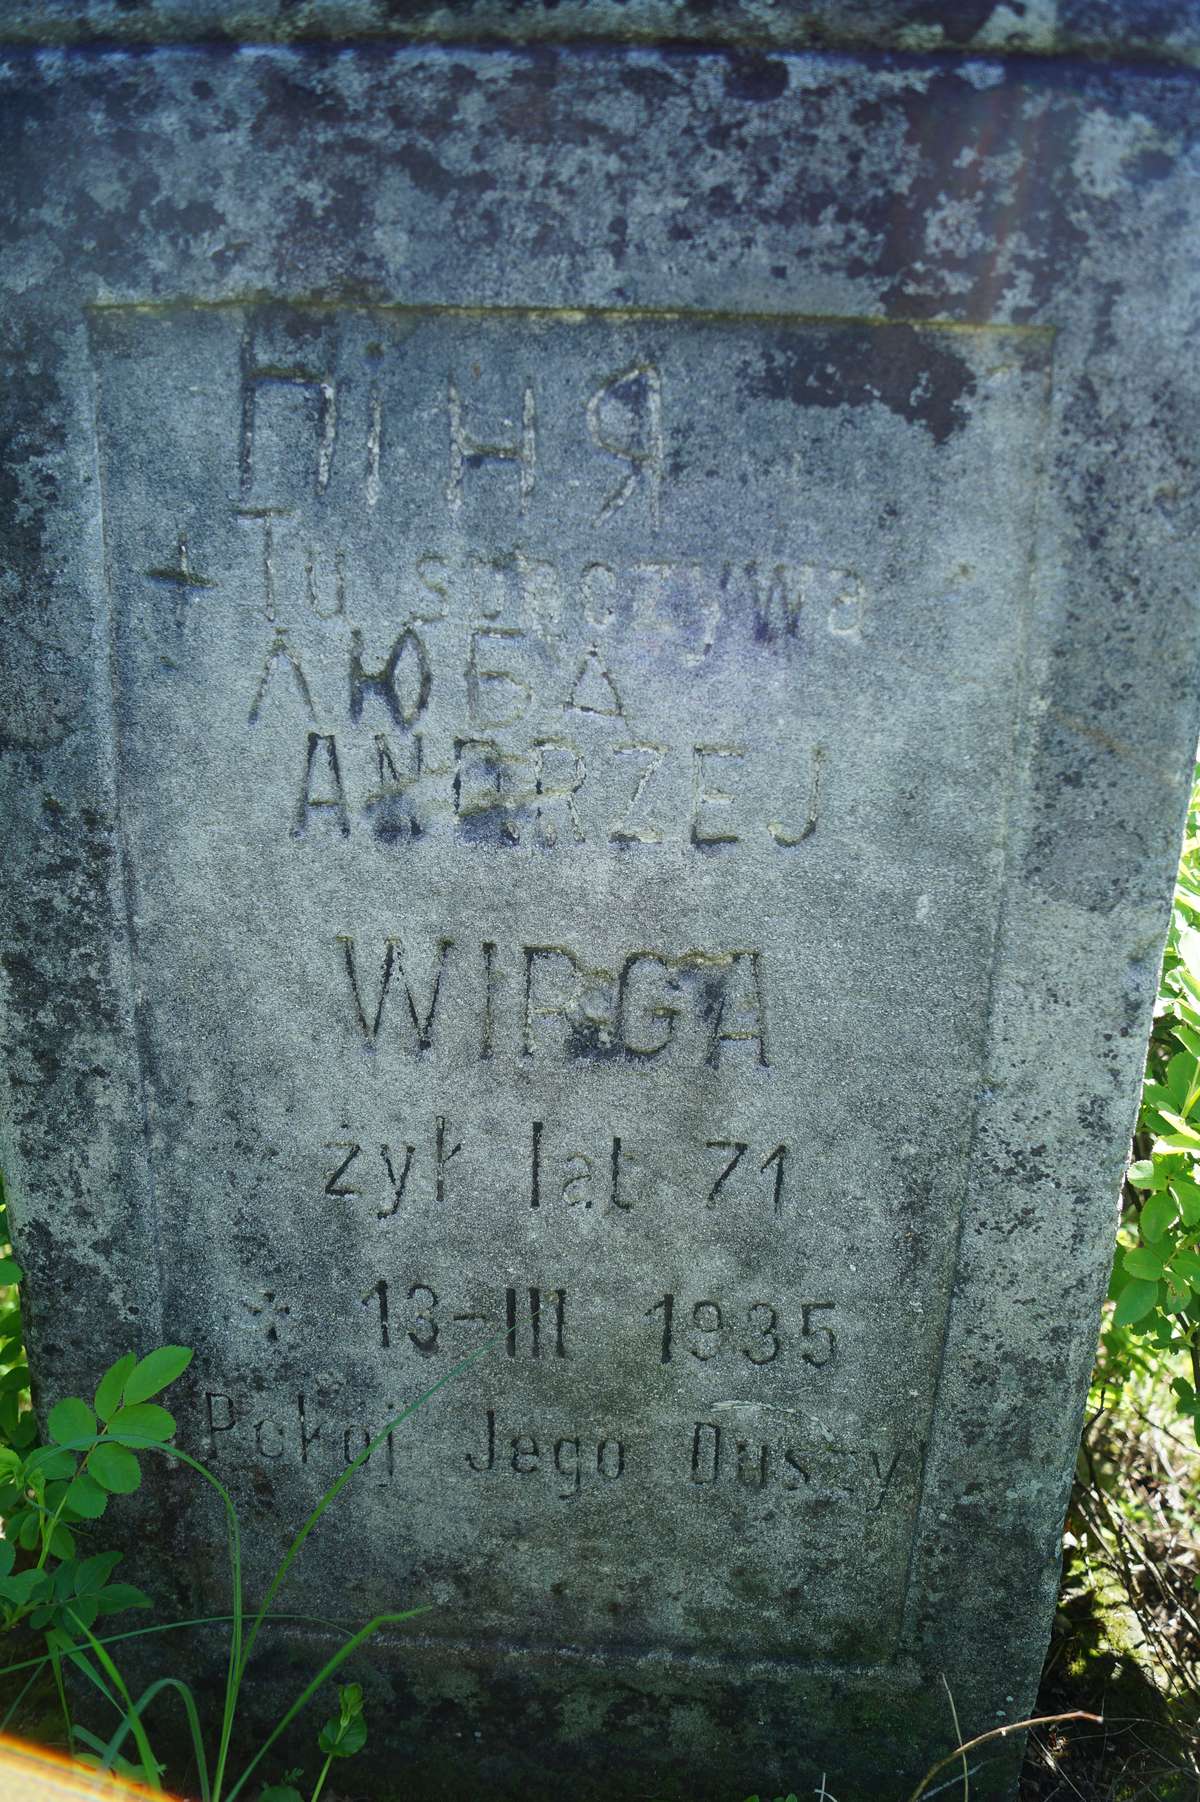 Inscription from the gravestone of Andrzej Wirga, Łozowa cemetery